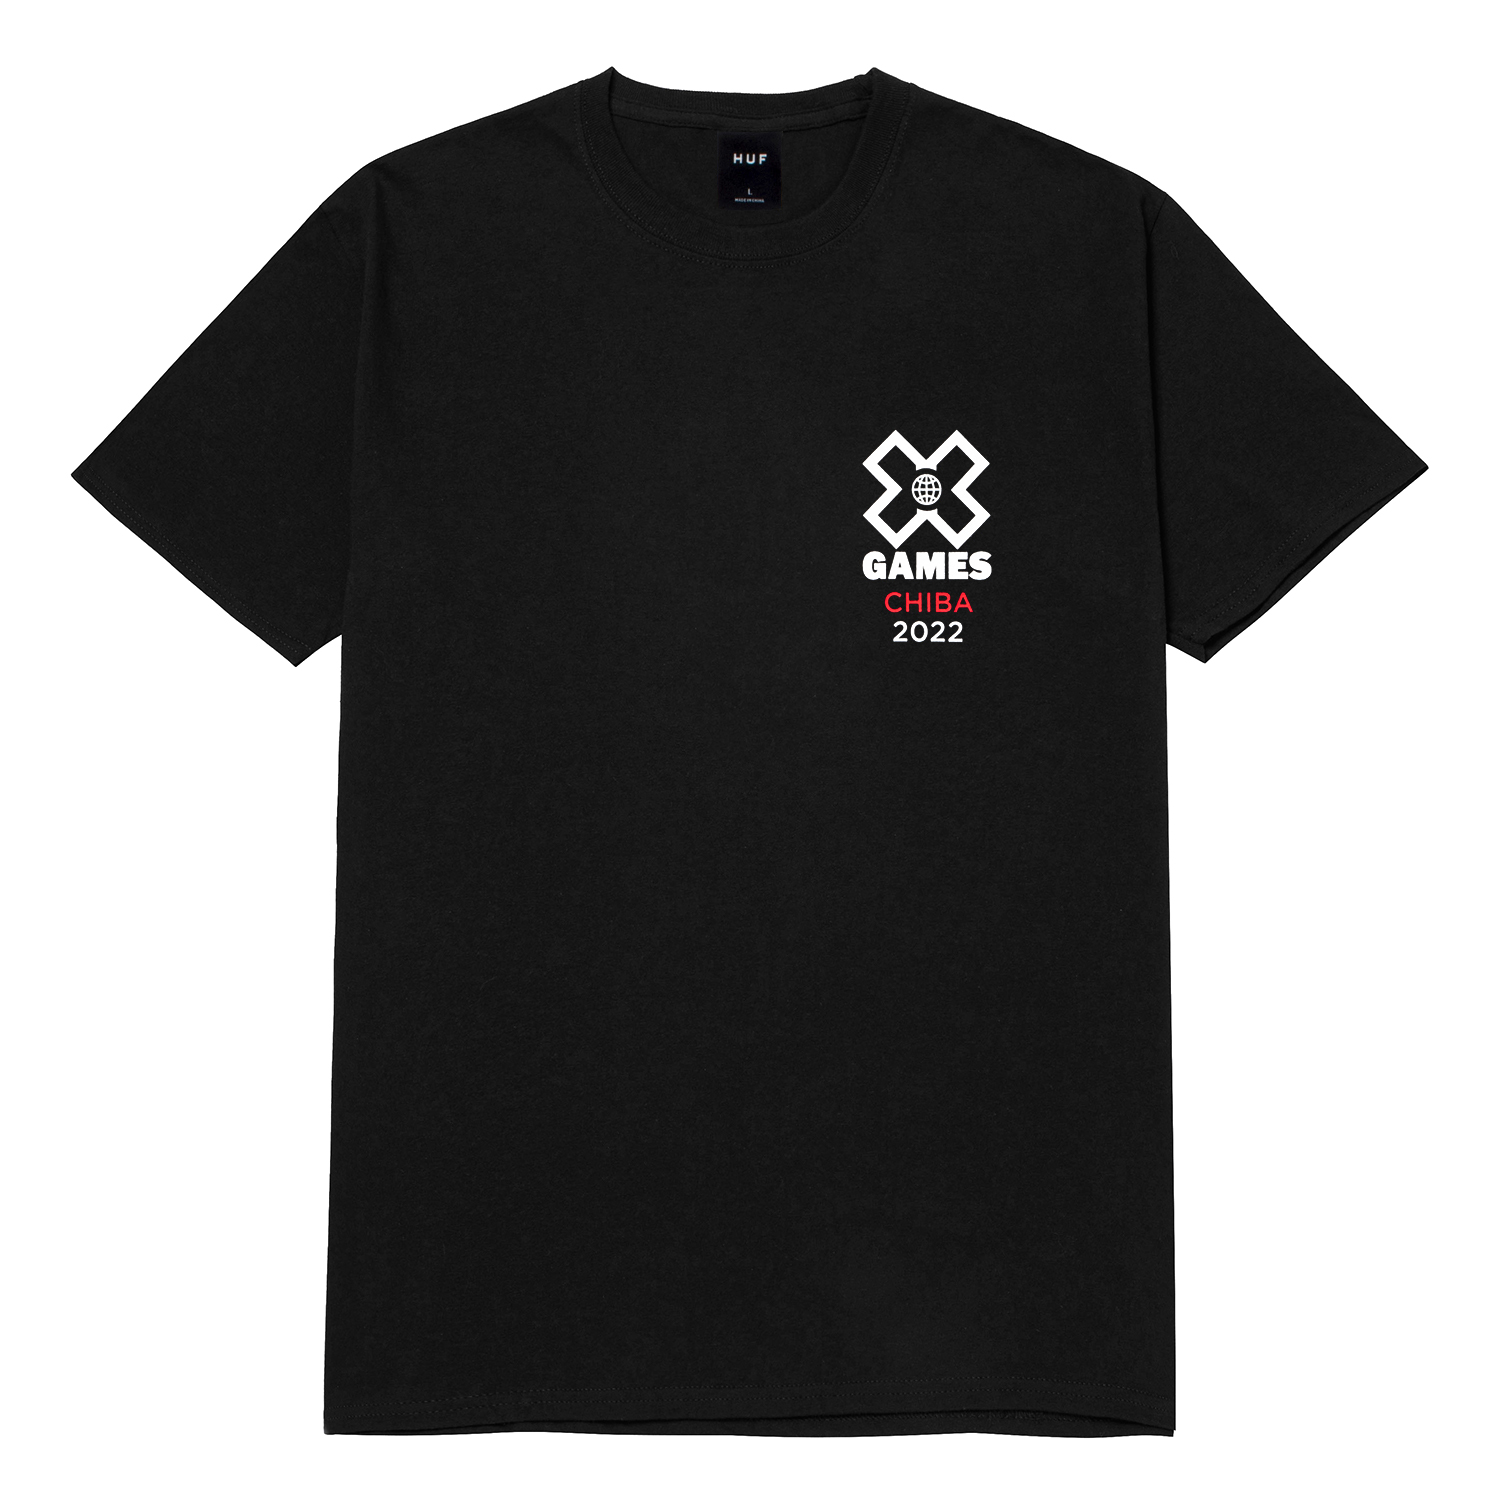 HUF x X Games Chiba 2022 T-Shirt Black Men's - SS22 - US